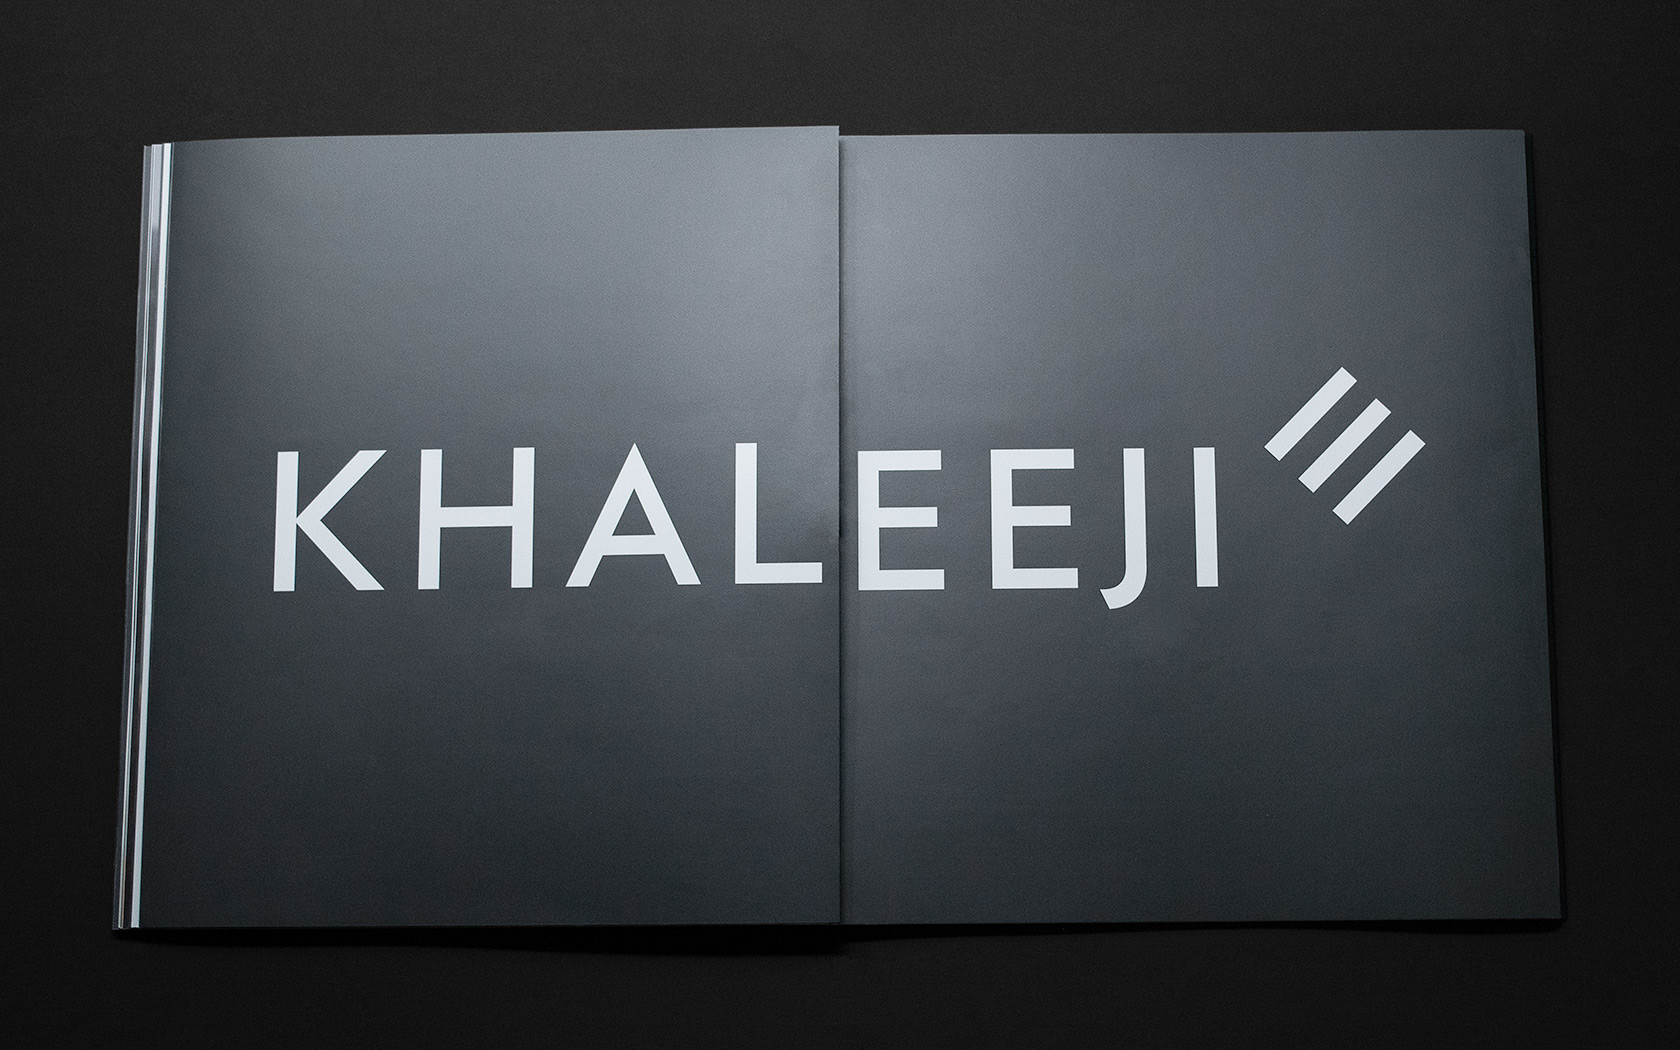 Khaleeji Brand Book. Brand logo spread